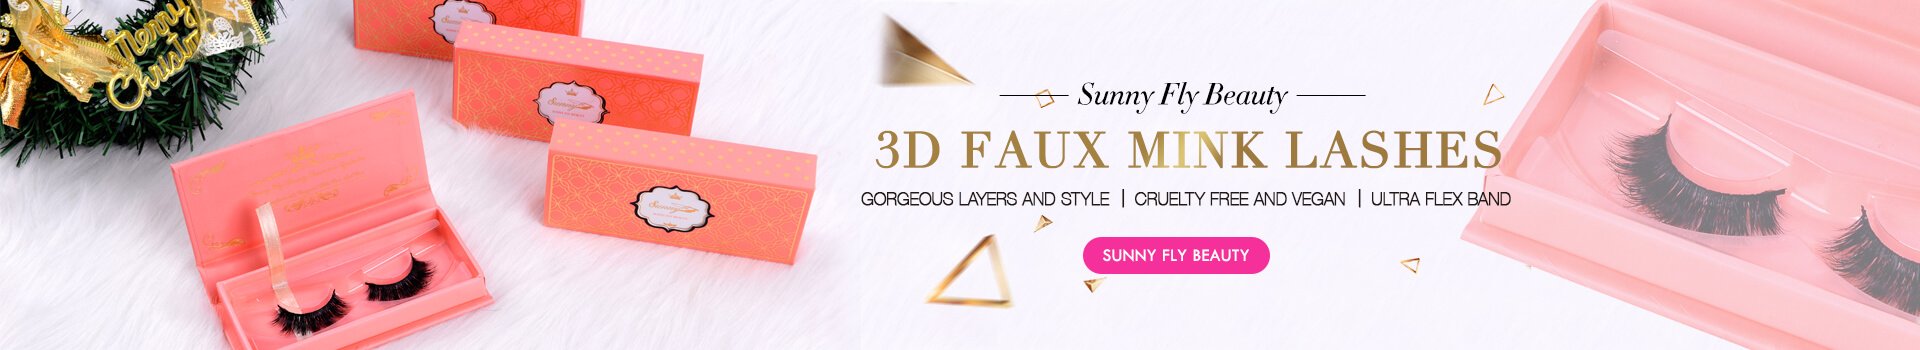 3D Faux Mink Lashes SD03